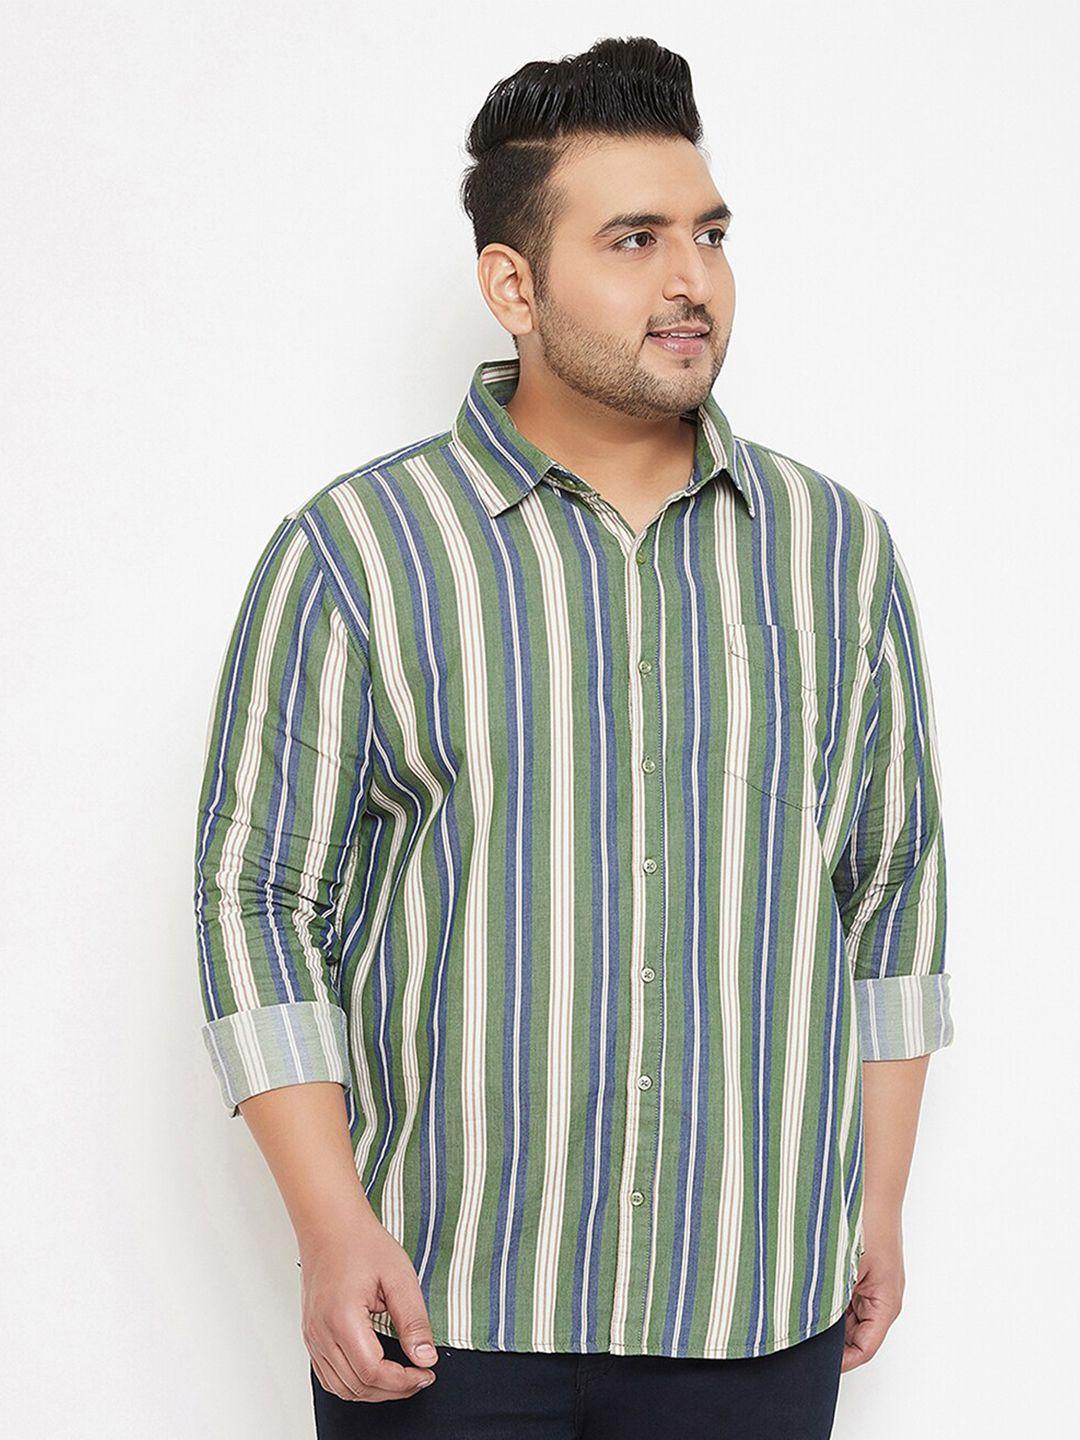 instafab plus men cotton plus size classic striped casual shirt